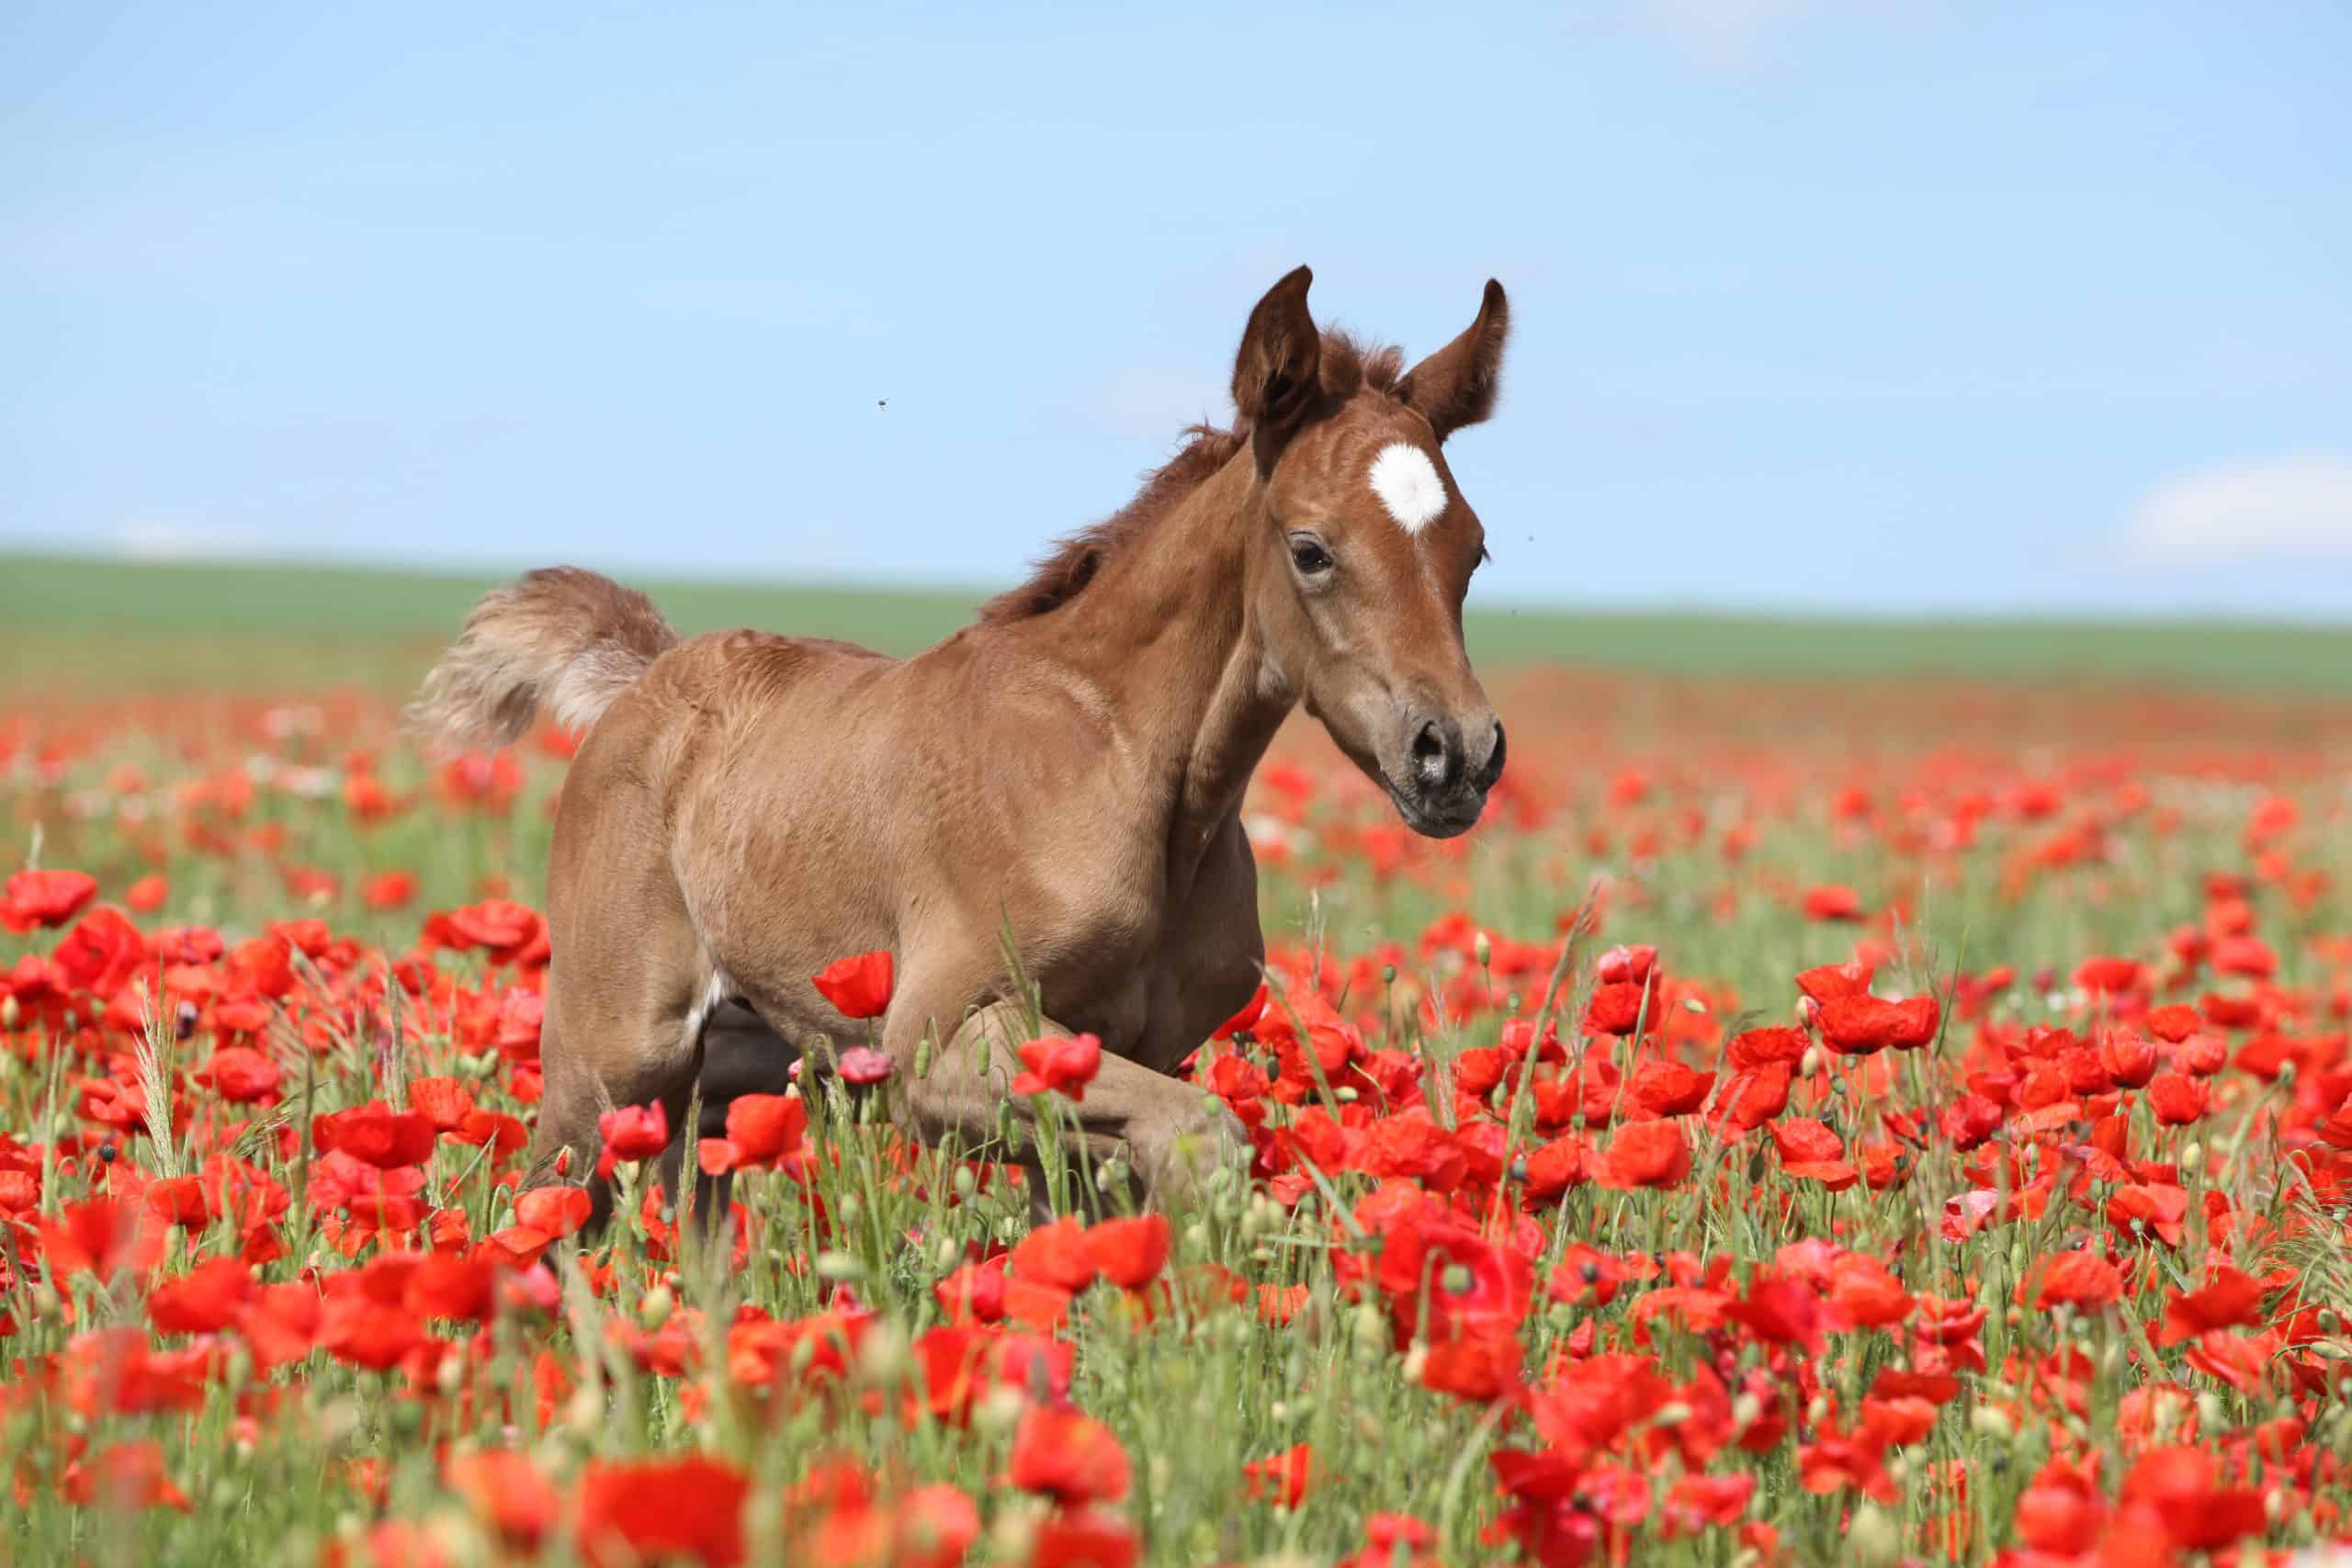 Arabian horse running in red poppy field